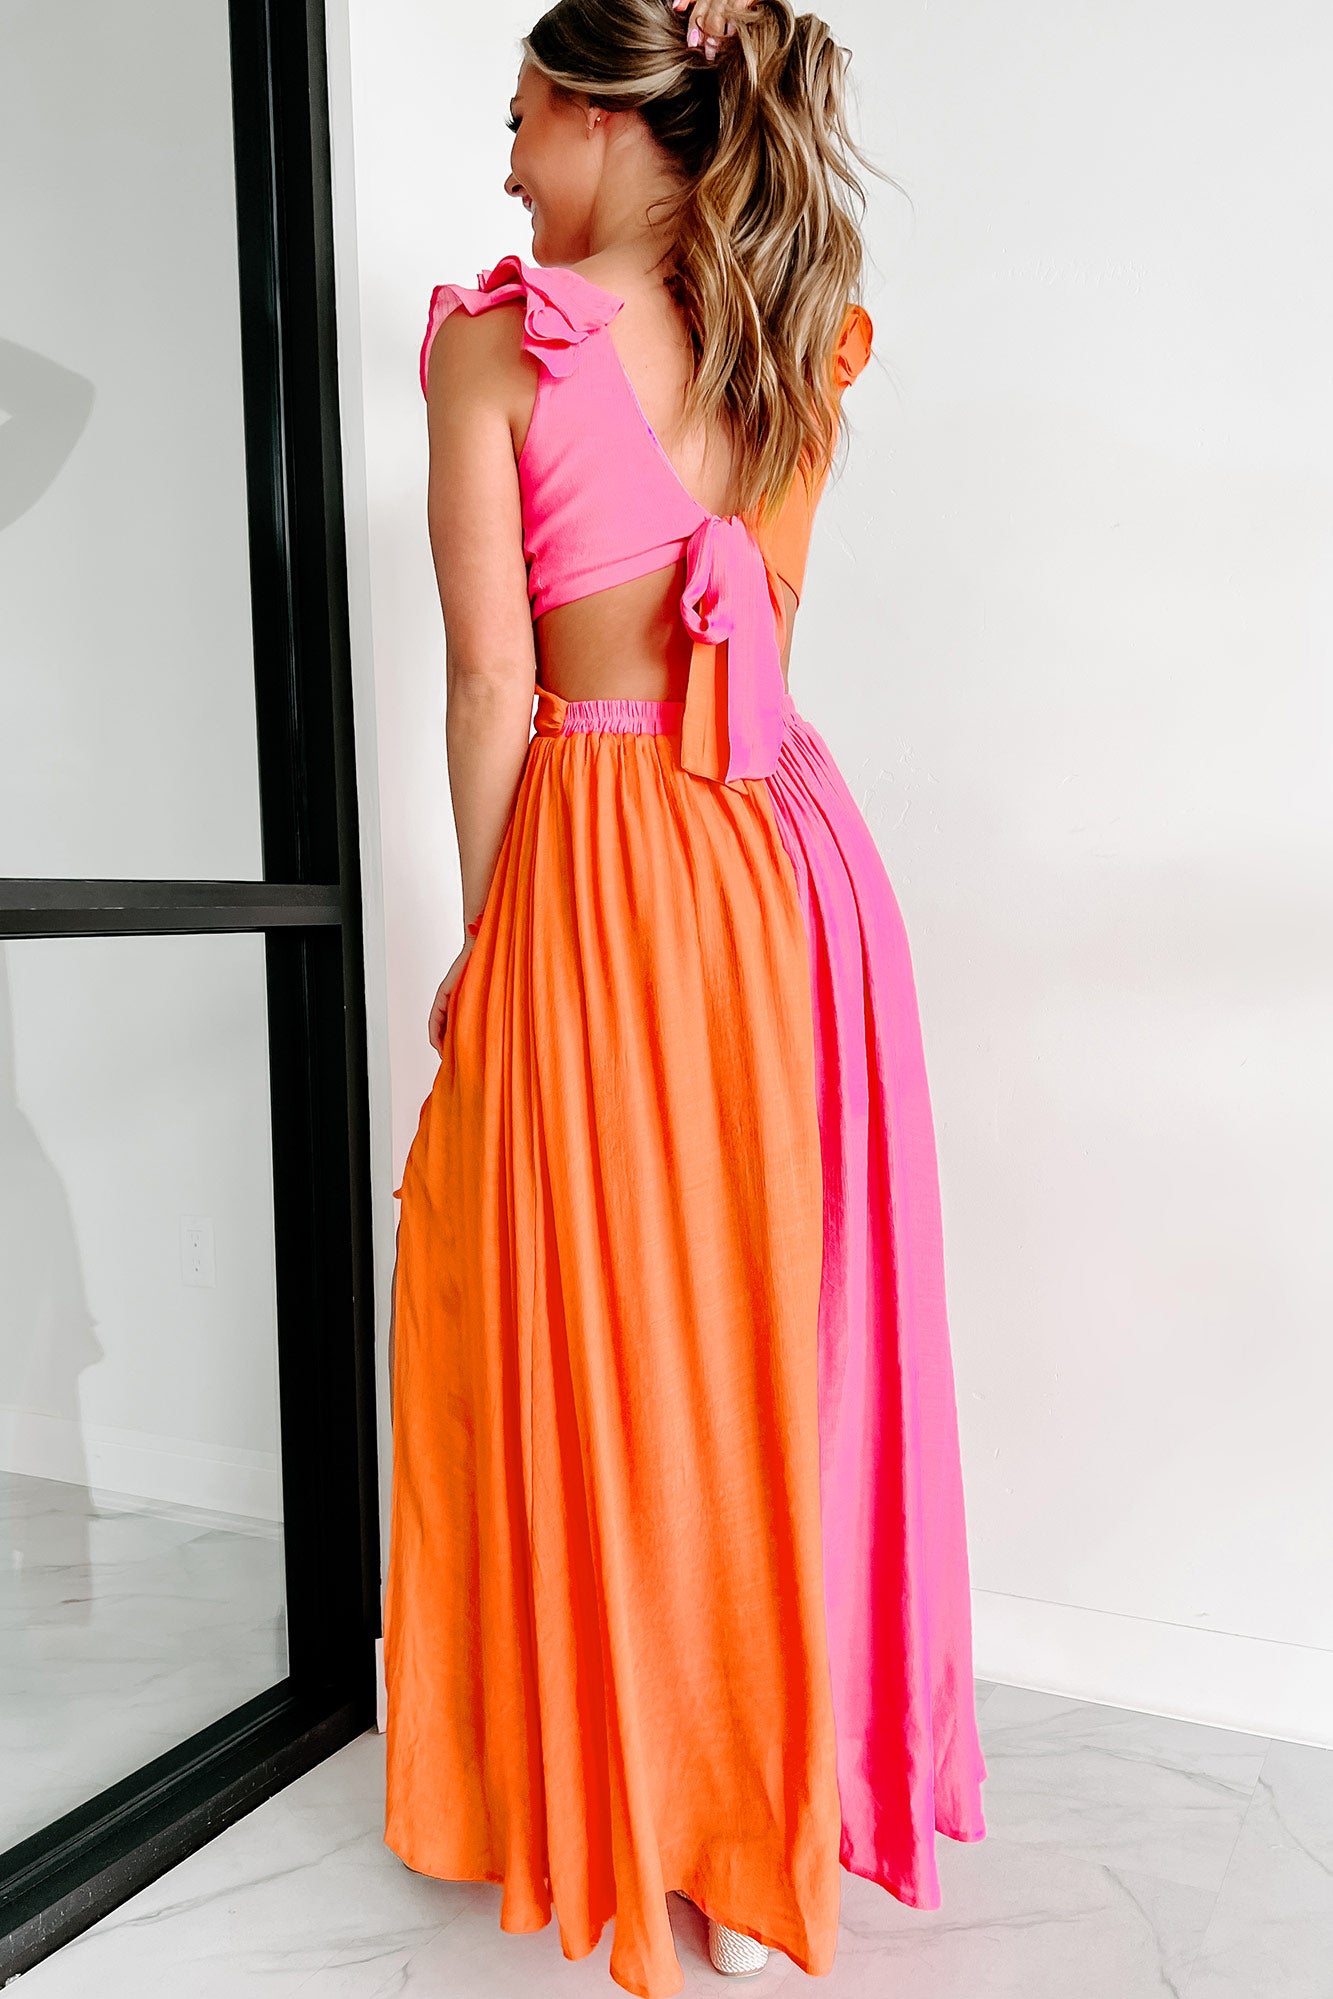 The Bright Path Ruffled Colorblock Maxi Dress (Pink/Orange) - NanaMacs